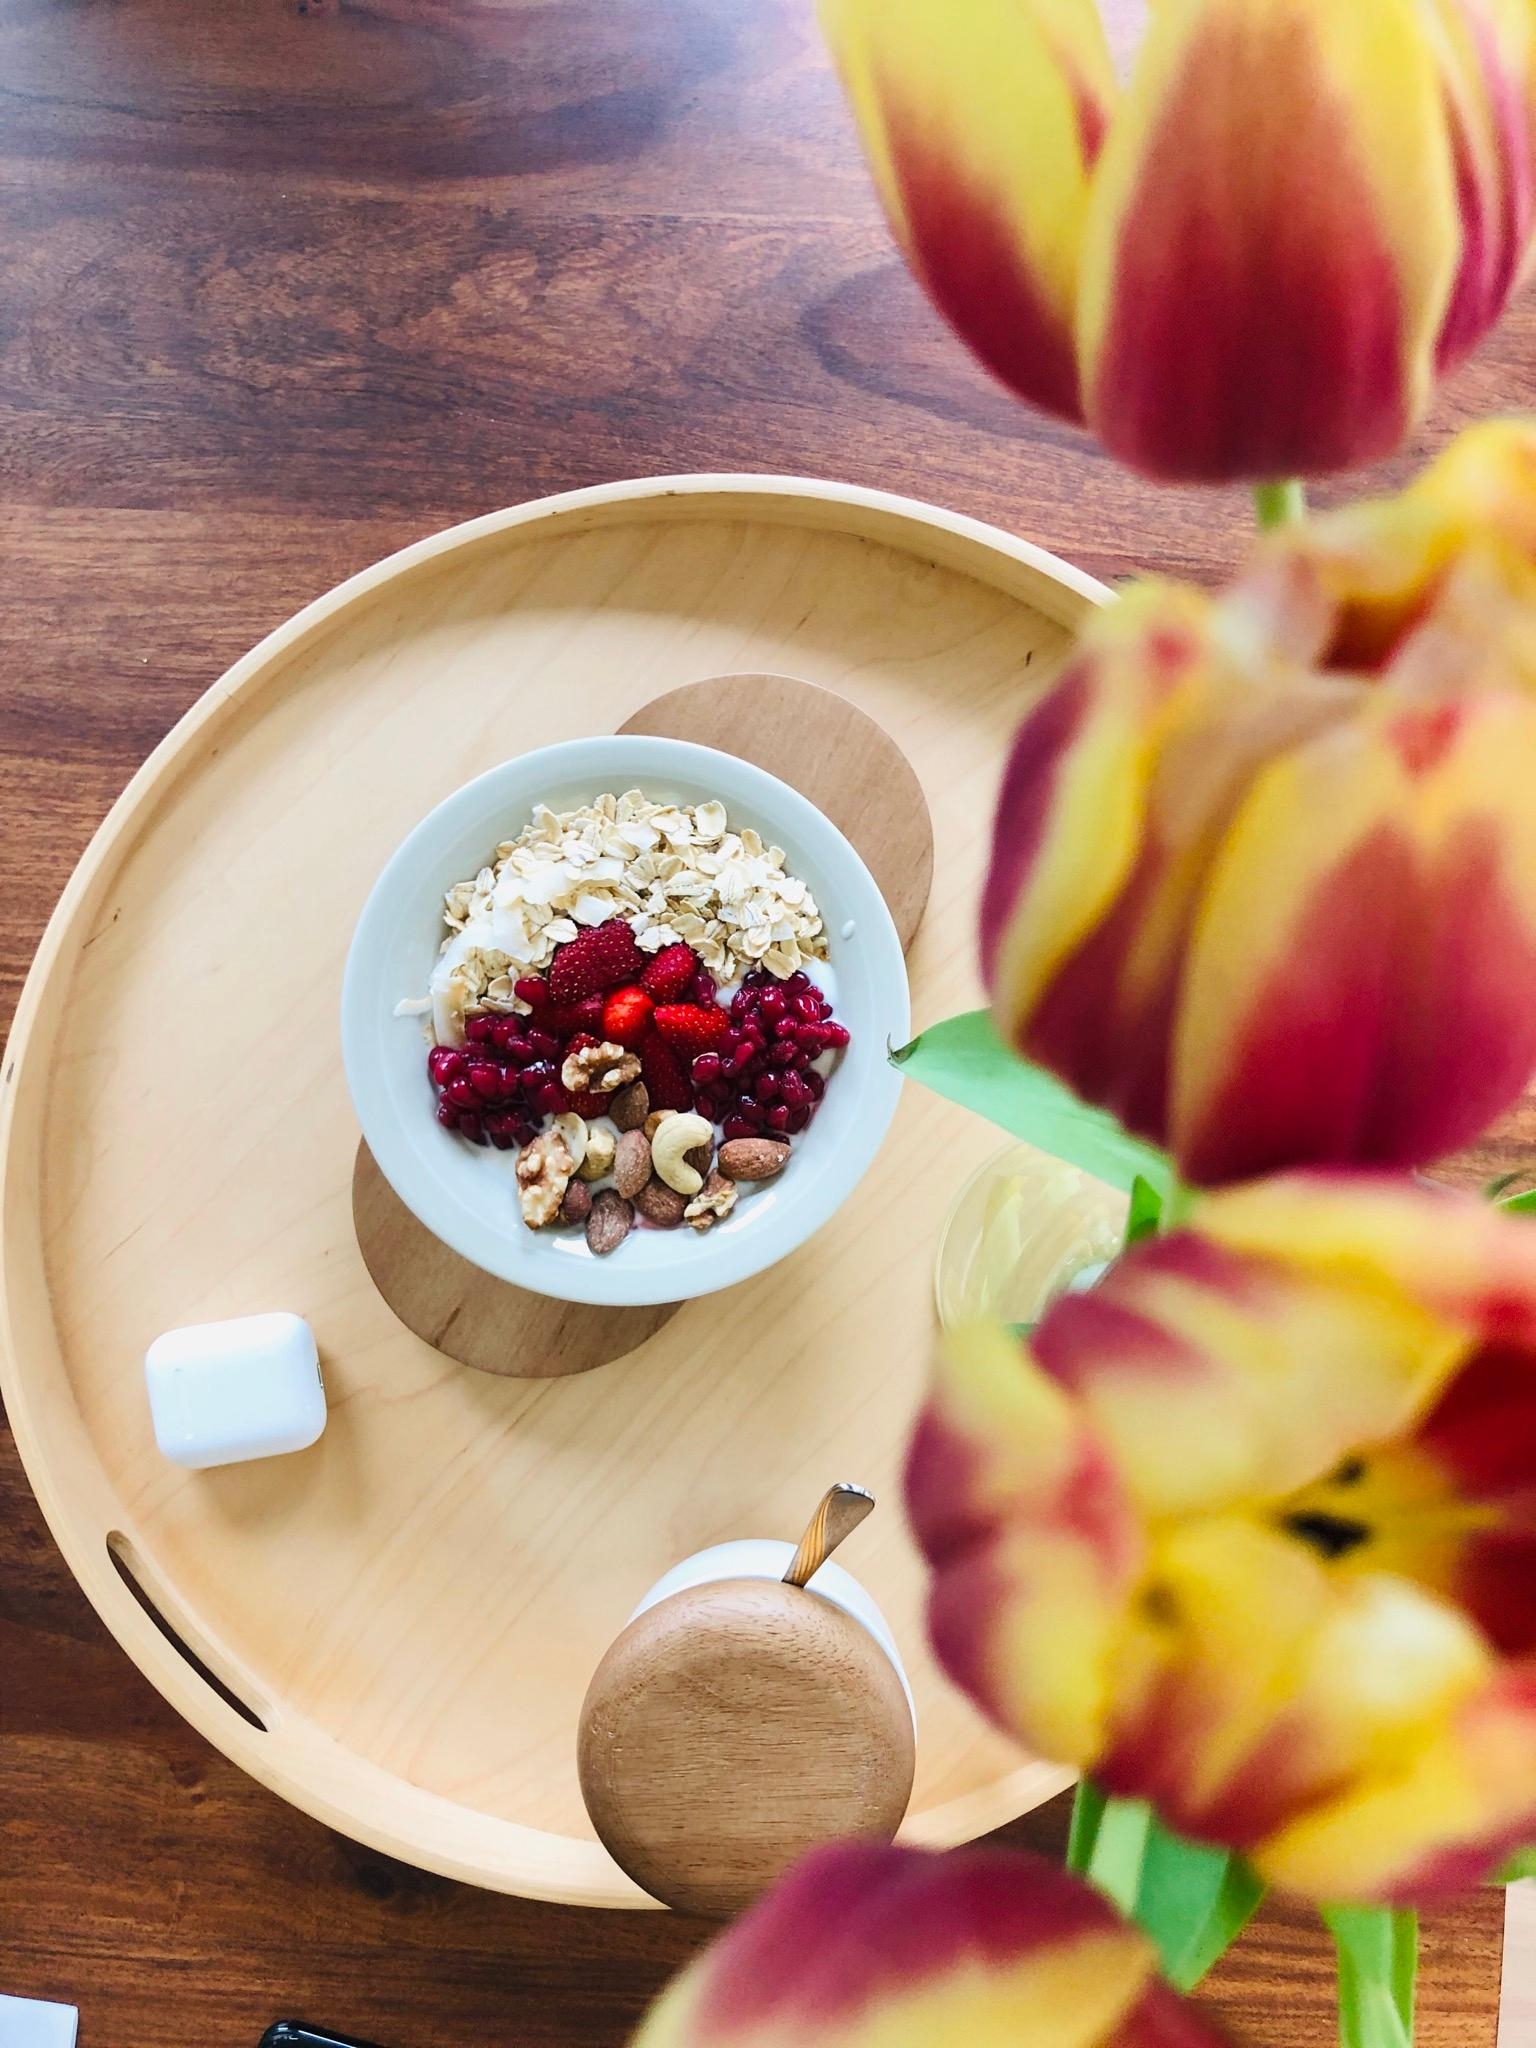 Neues Hobby: Frühstücksbowls 😊 #frühstück #foodlover #tulpen #tablett Wie macht ihr euch den Start in den Tag schön? 